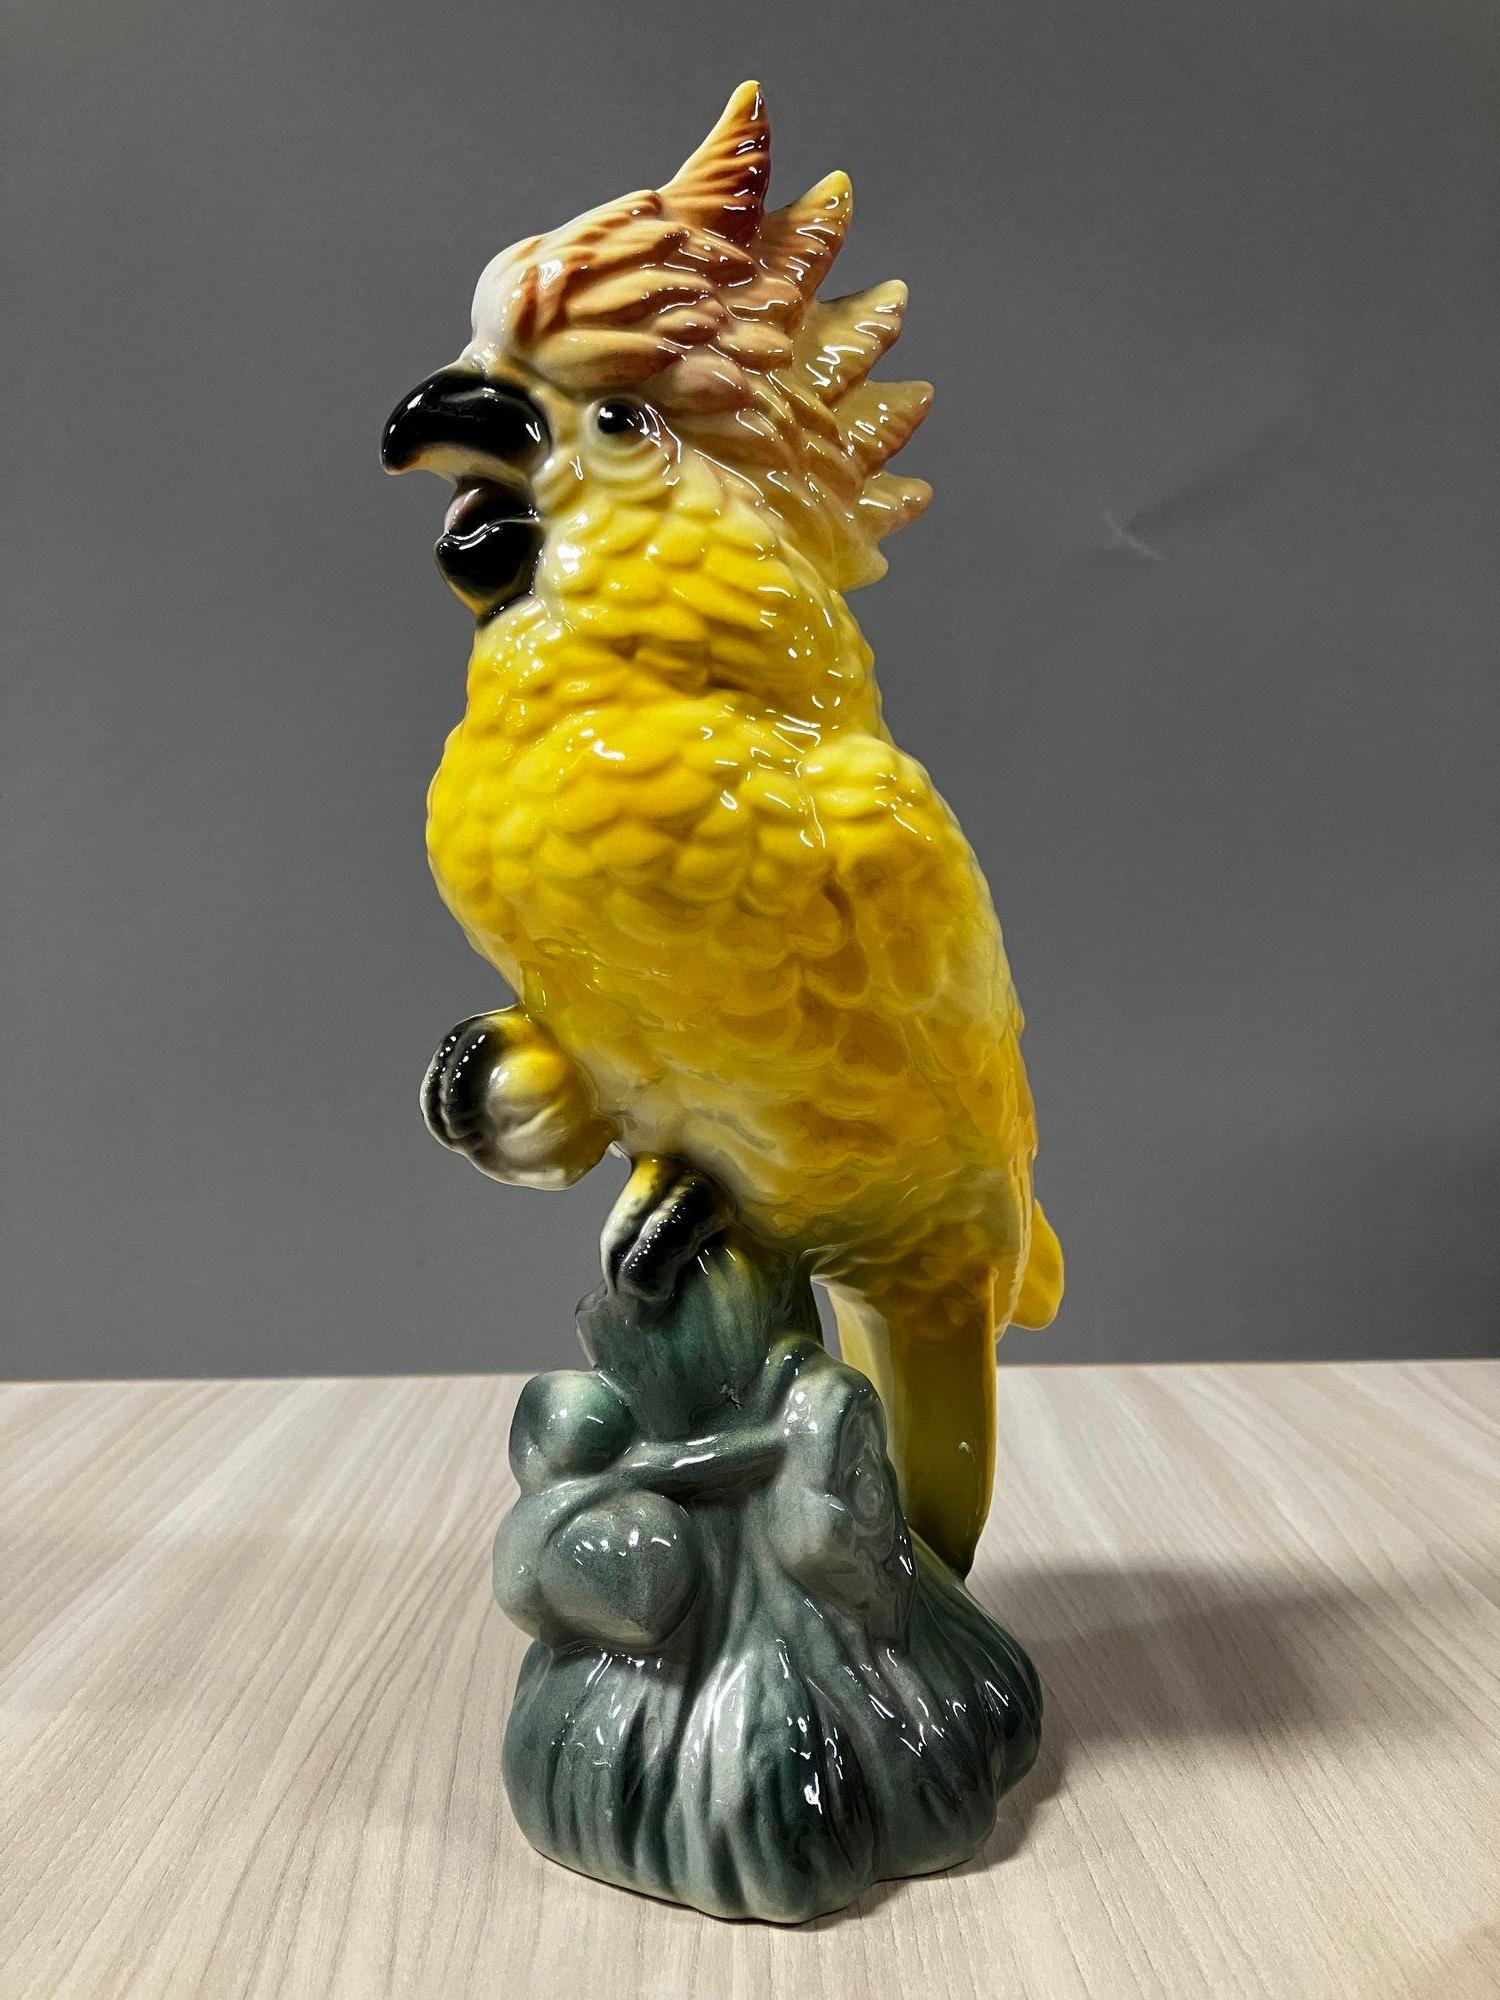 Céramique du milieu du siècle en forme de cacatoès sur une branche, de couleur jaune tropicale, par le célèbre potier californien William Maddux.

Un bon exemple de la manie hawaïenne qui s'est emparée des États-Unis après la Seconde Guerre